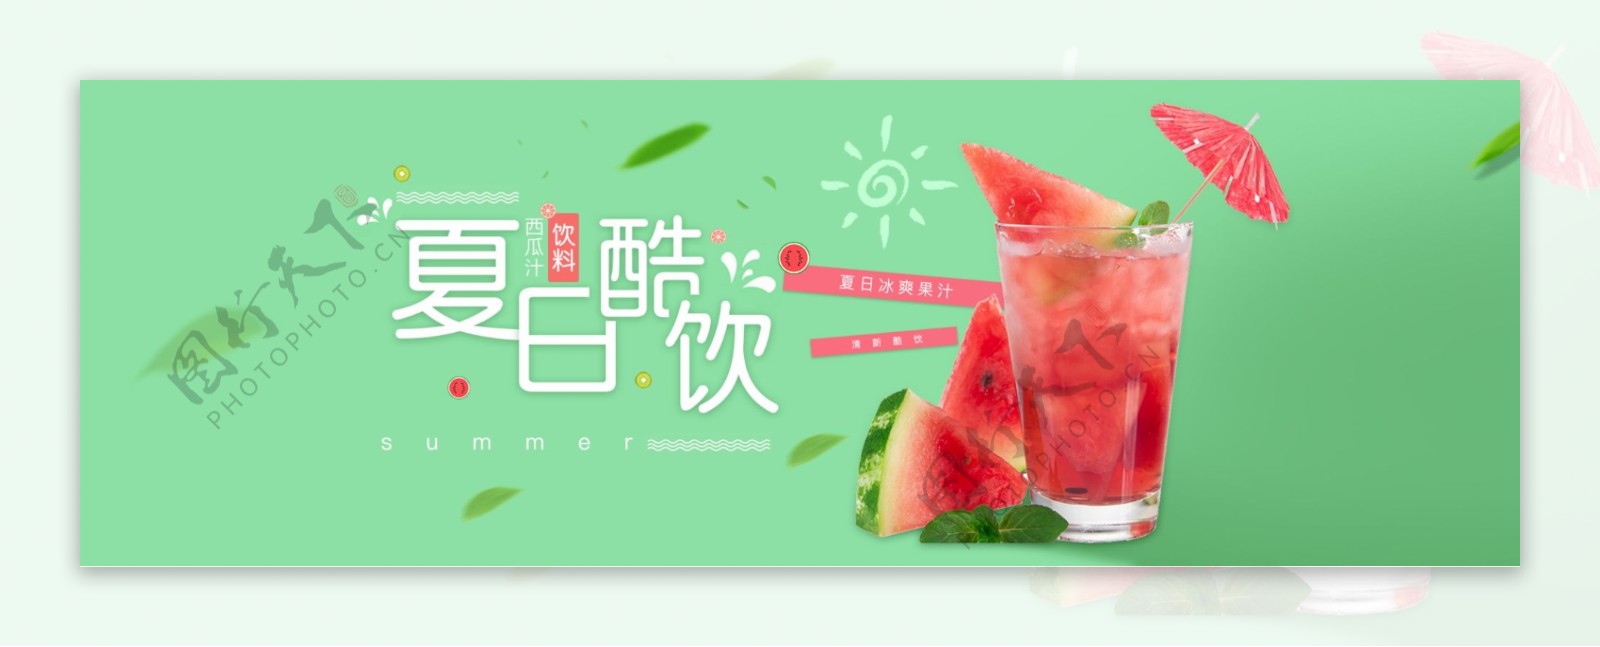 电商淘宝夏日酷饮夏季促销海报banner